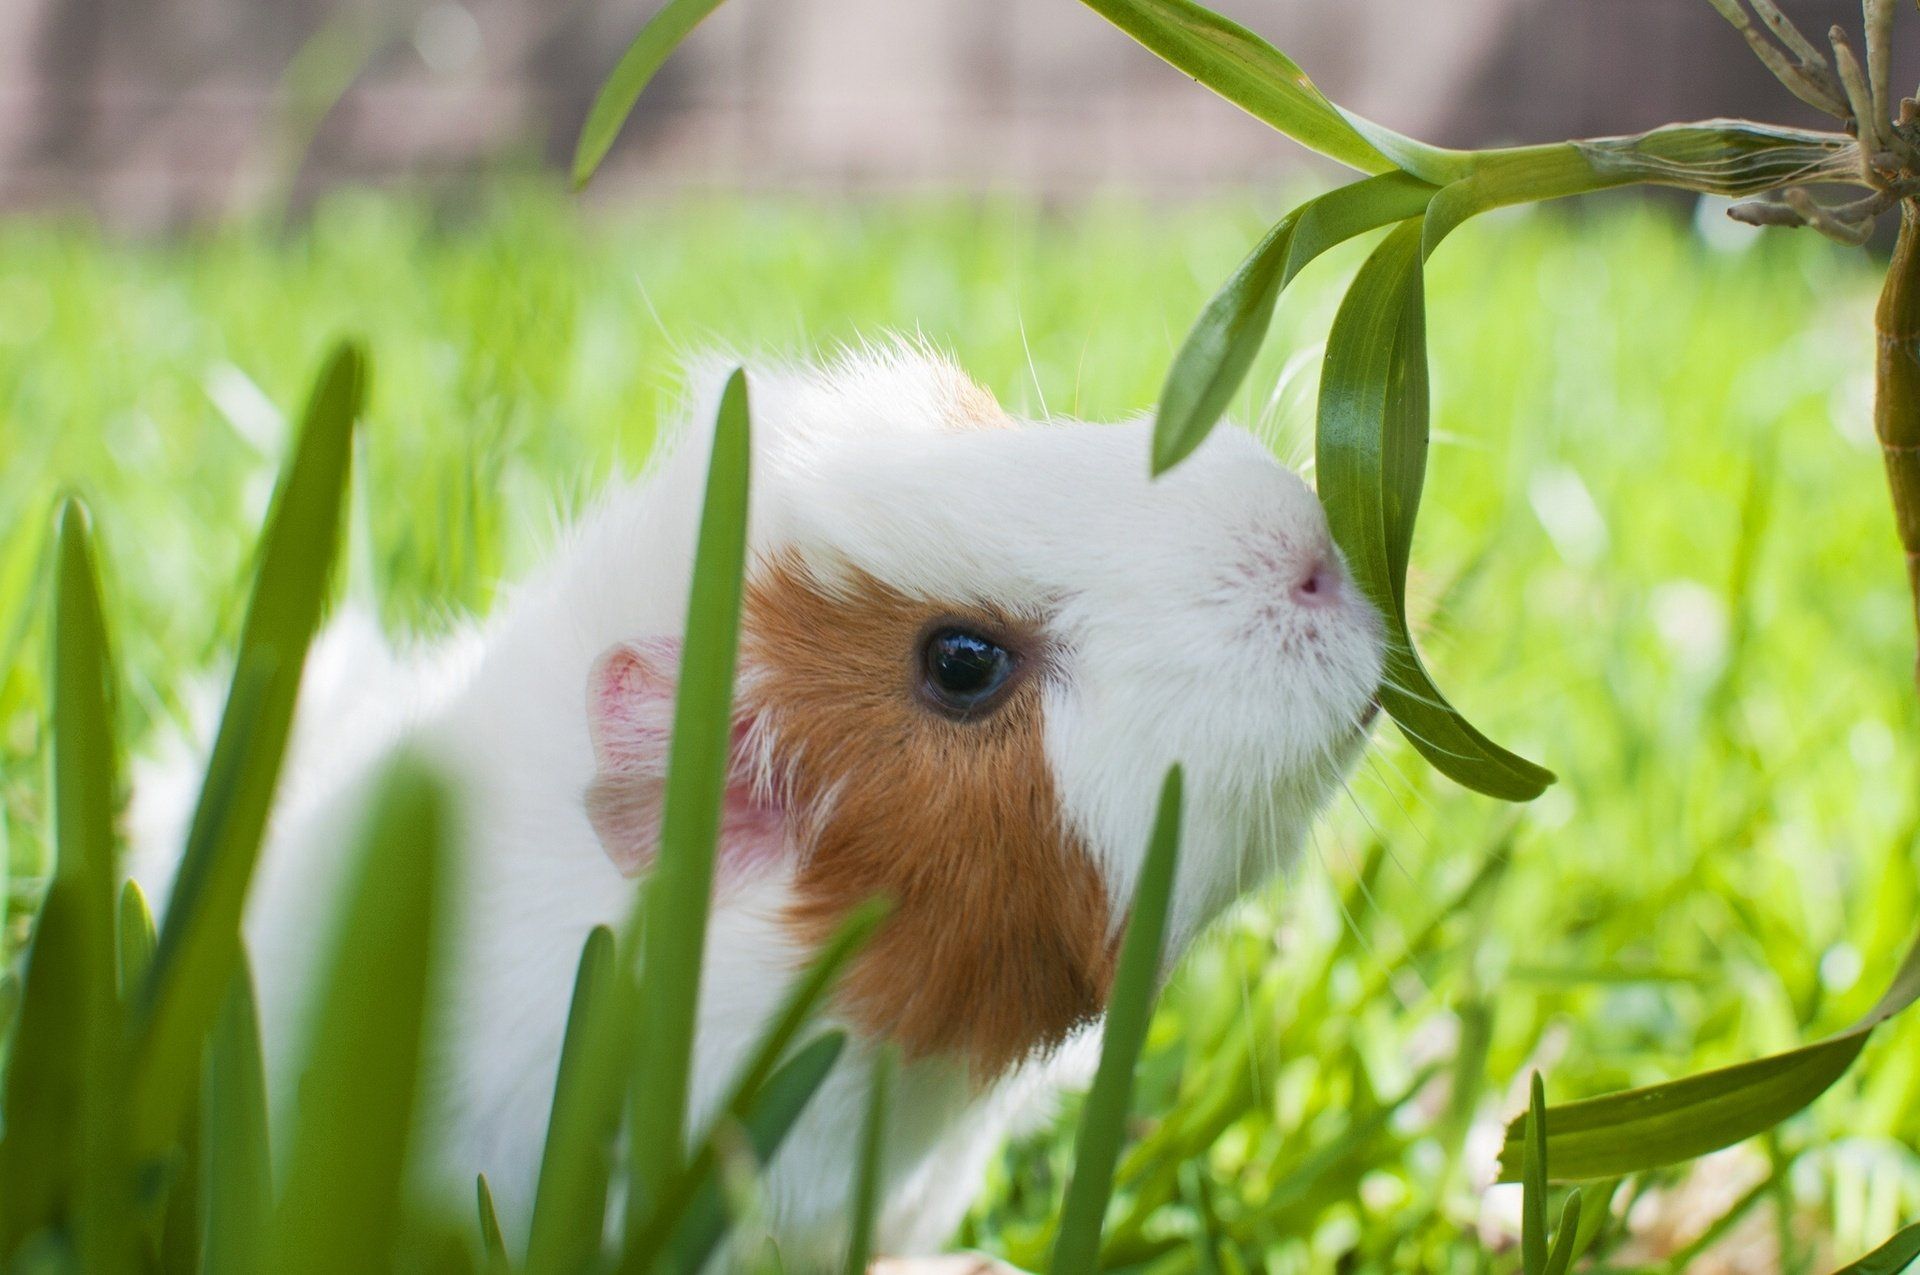 دانلود عکس فوق العاده زیبا از خوکچه هندی کوچولو 